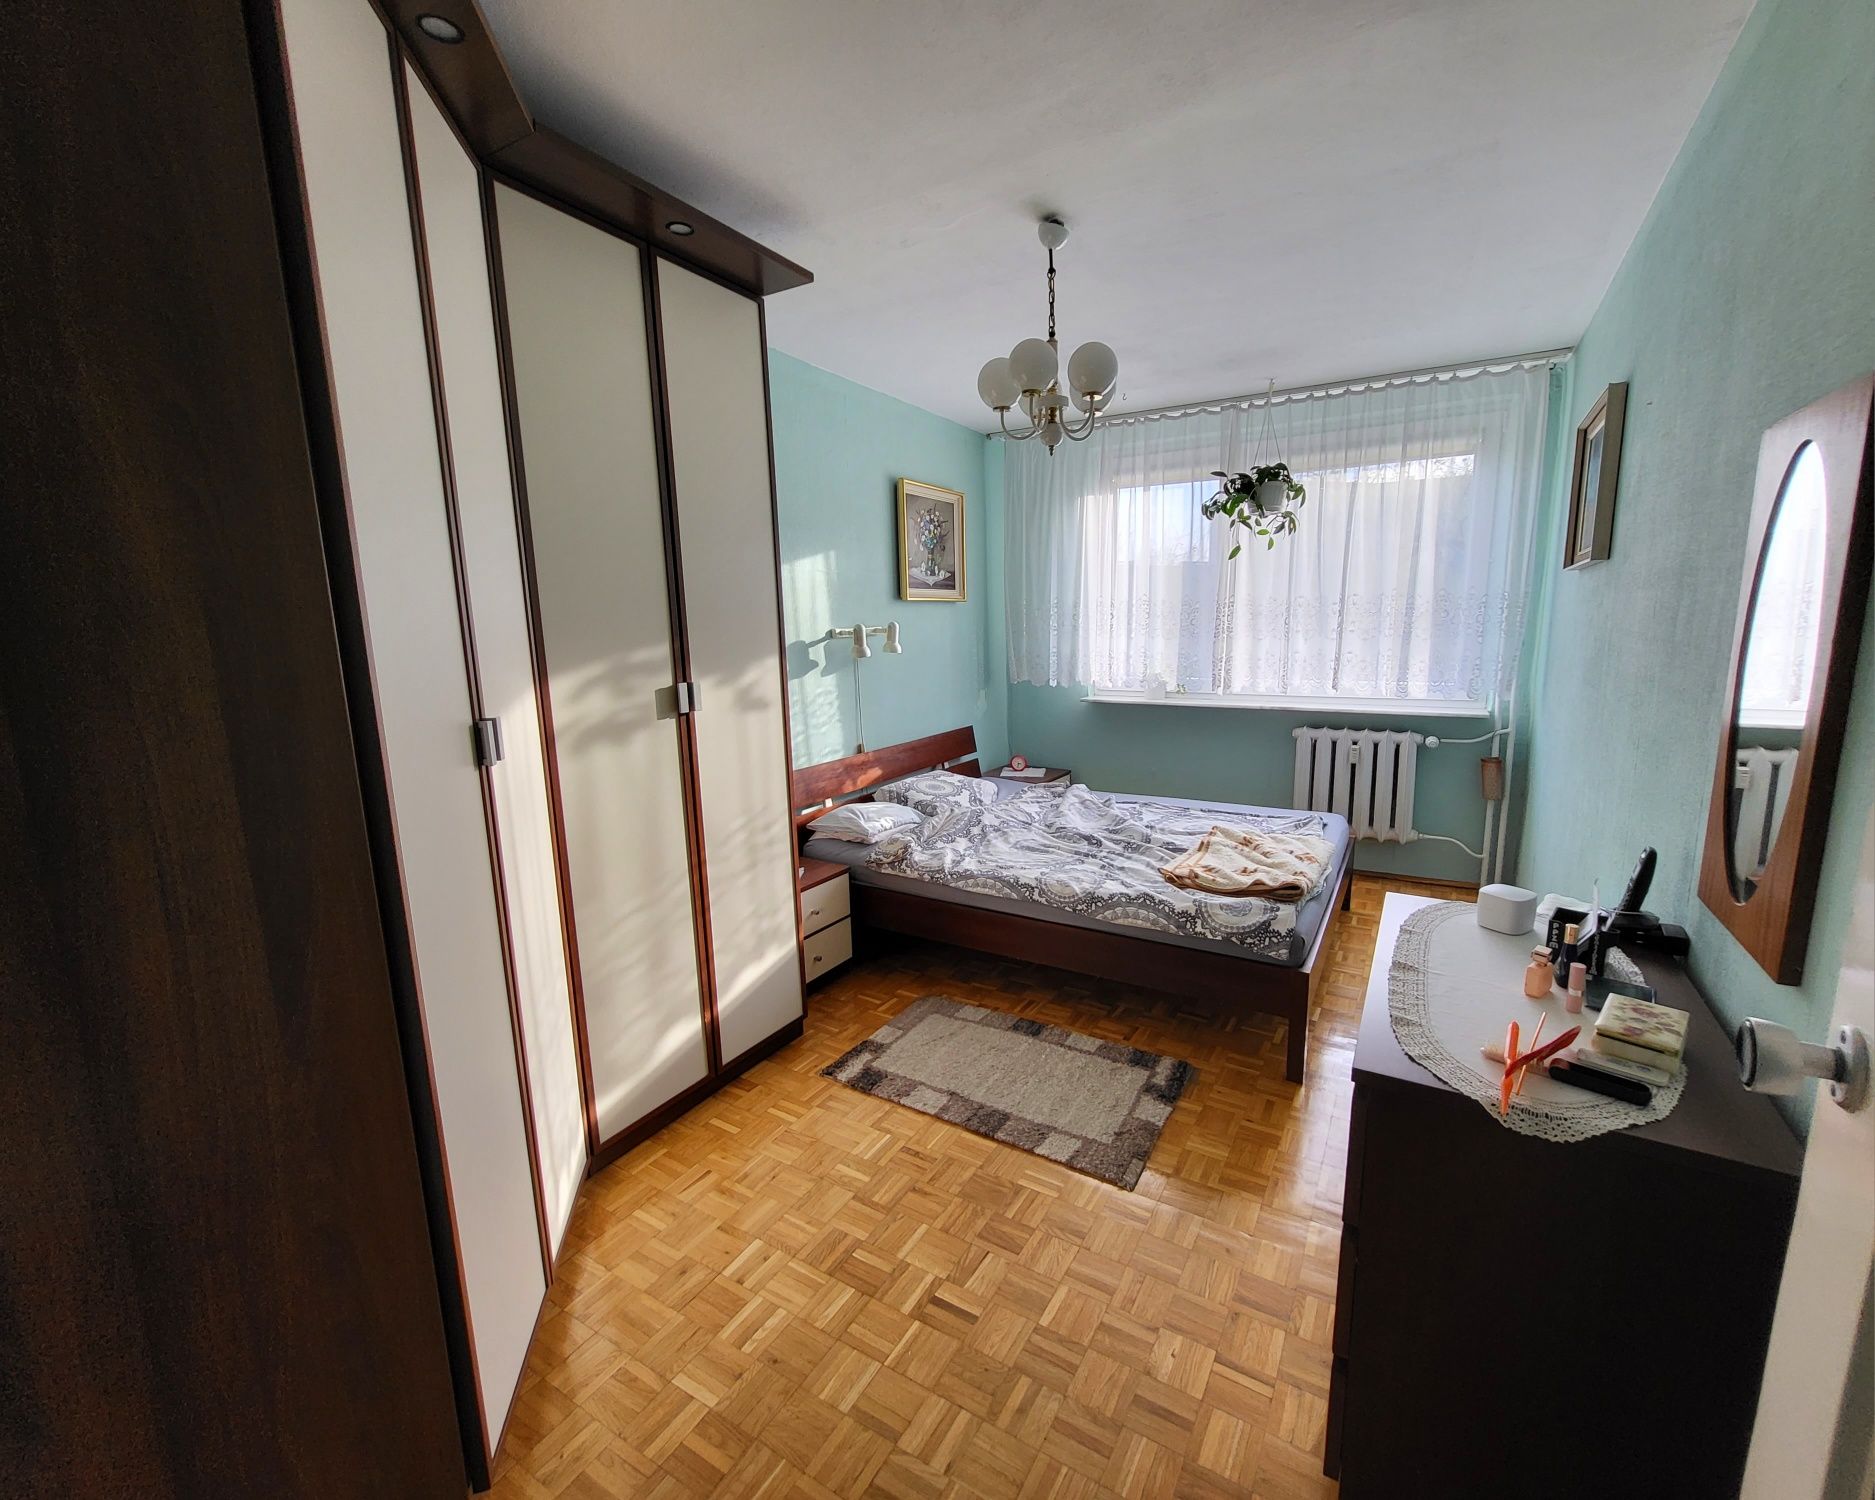 Wrocław mieszkanie 3 pokojowe - bez pośredników